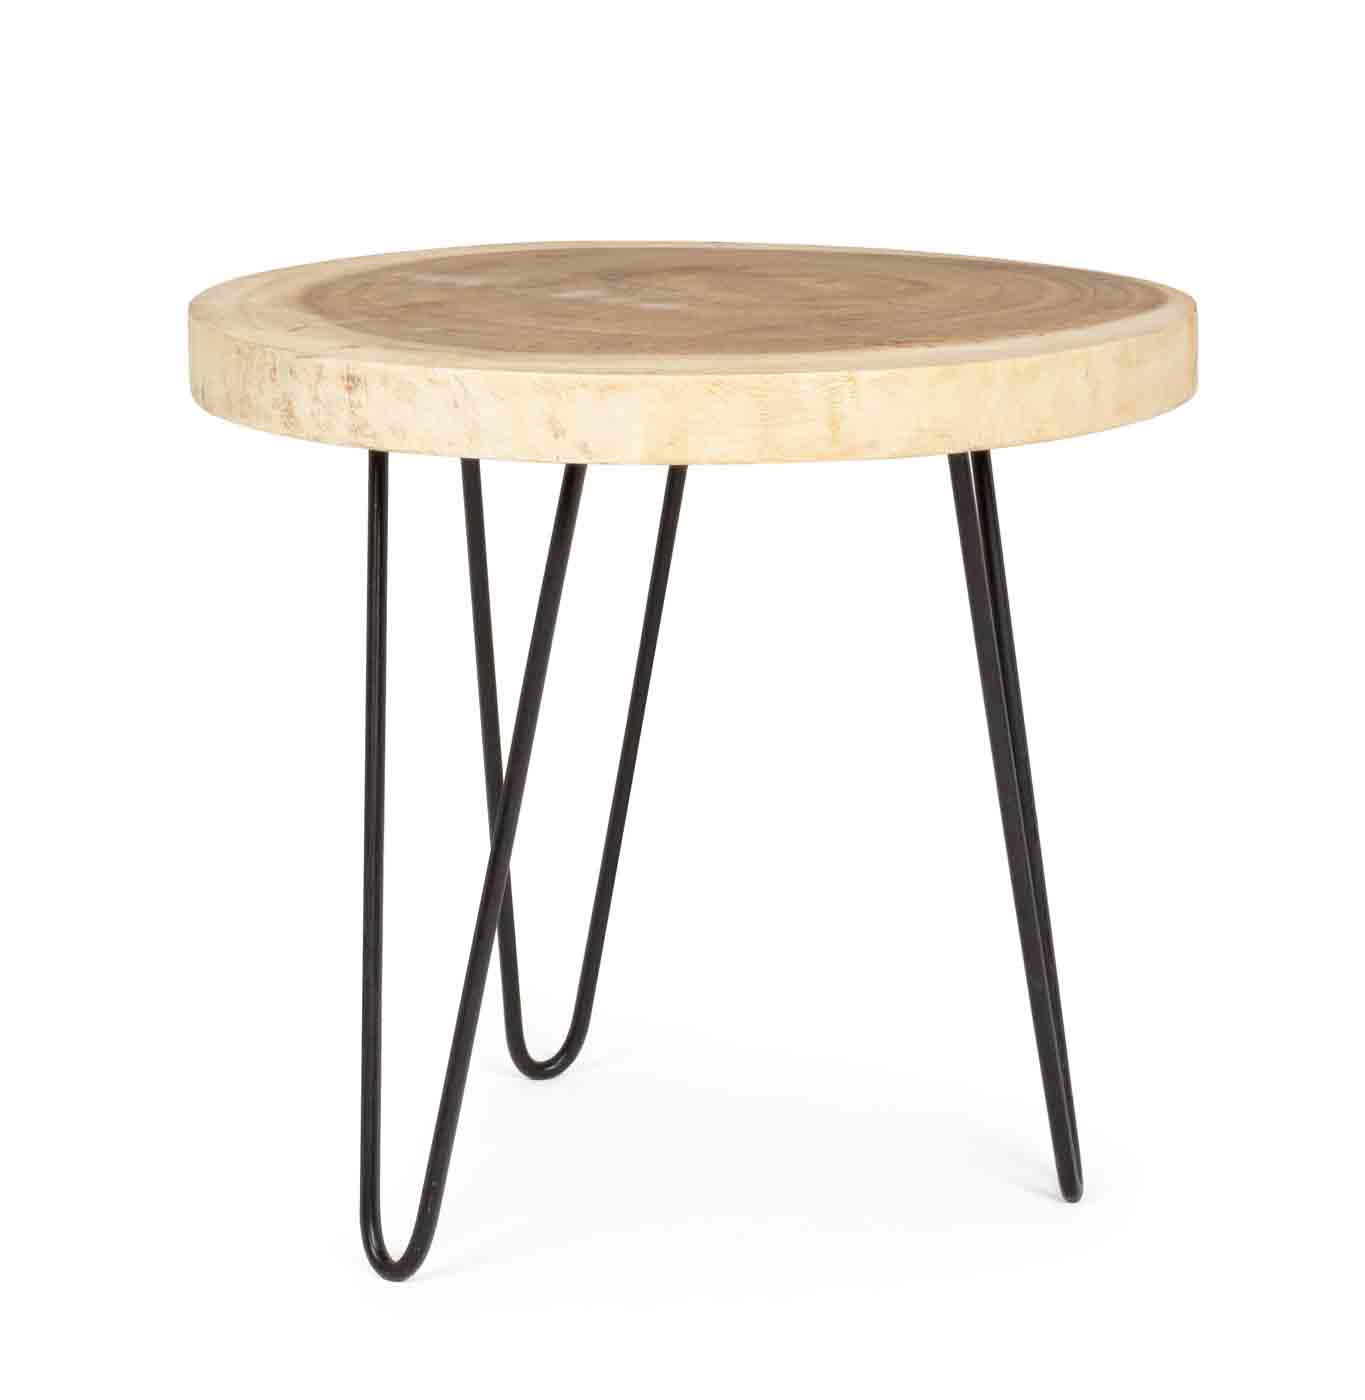 Der Beistelltisch Tuala überzeugt mit seinem modernen Design. Gefertigt wurde die Tischplatte aus Mungurholz, welches eine Feinbearbeitung aus Lack erhalten hat. Durch die Verwendung von Naturmaterialien sind alle Produkte unterschiedlich und individuell.